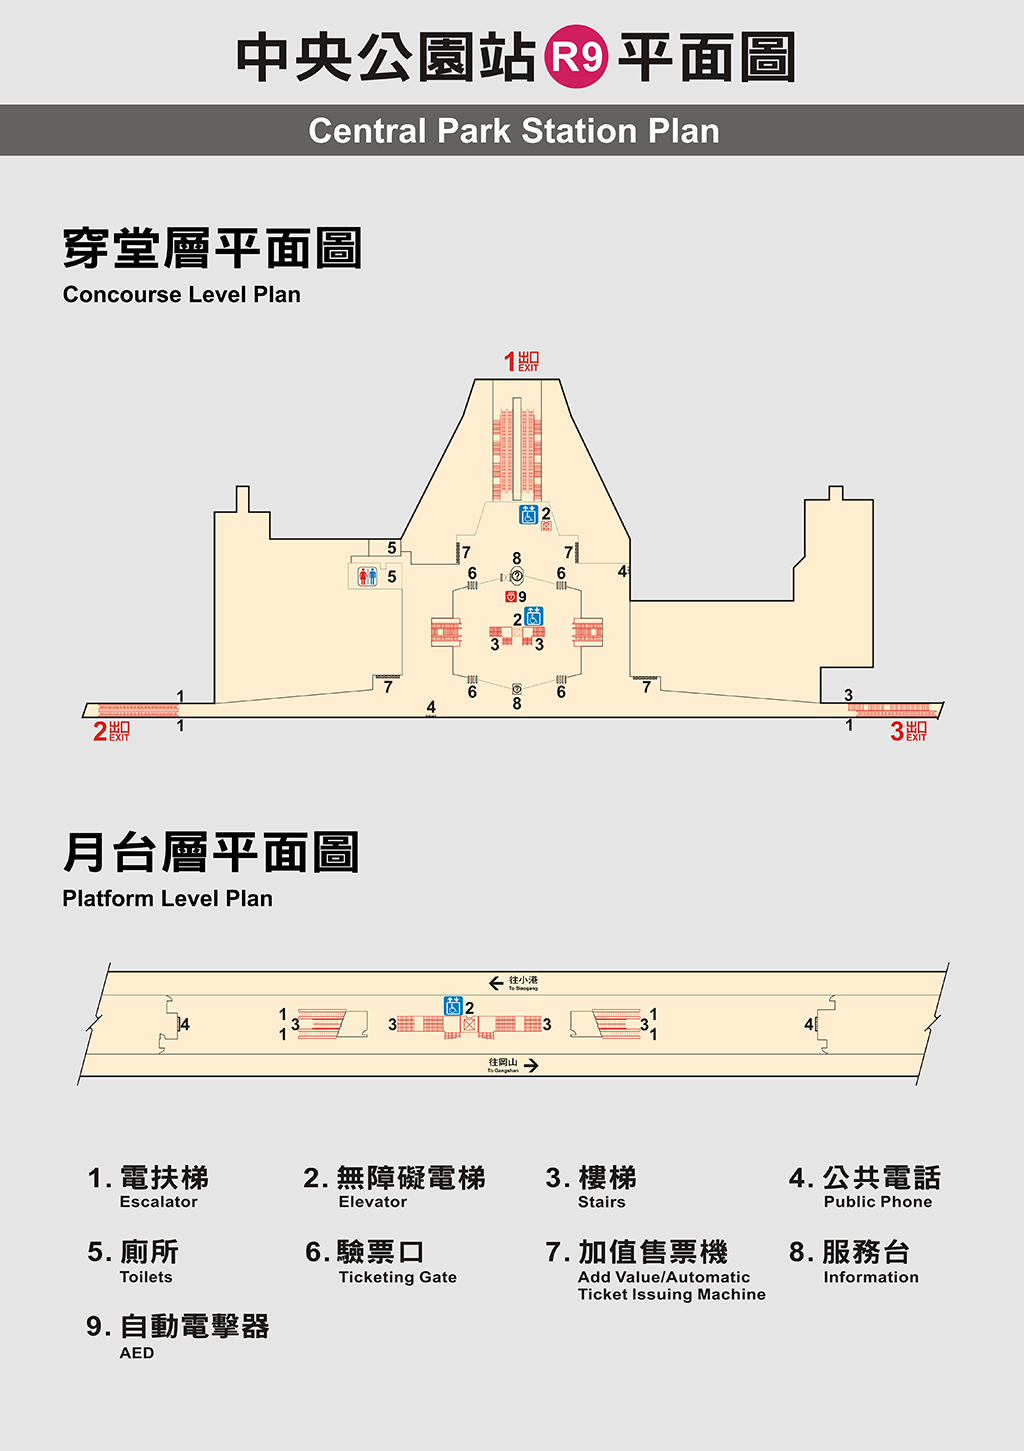 高雄捷運中央公園站車站平面圖出口圖